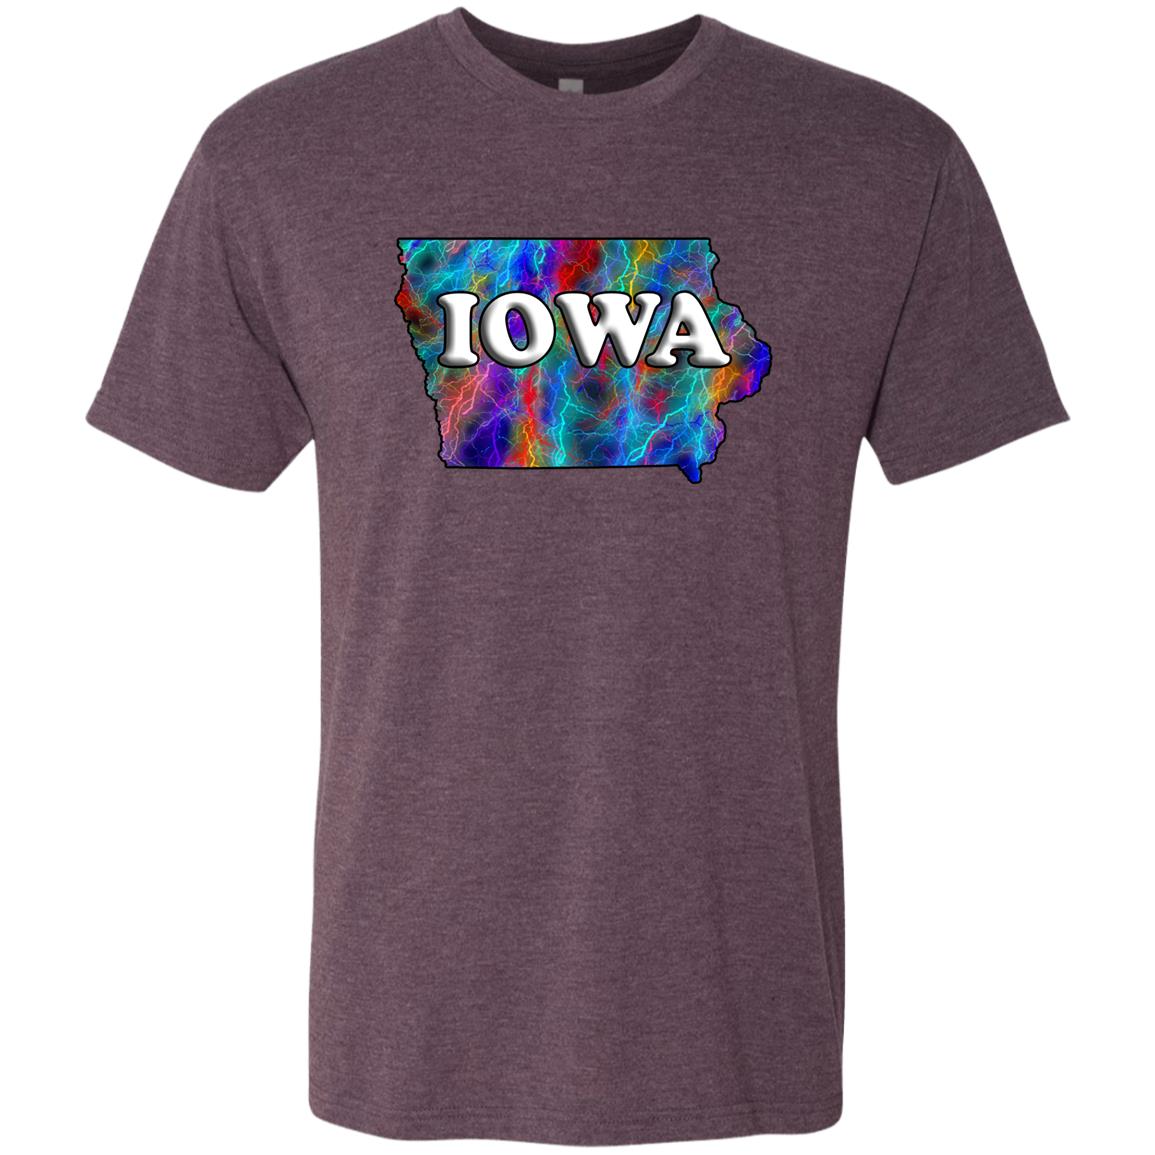 Iowa State T-Shirt